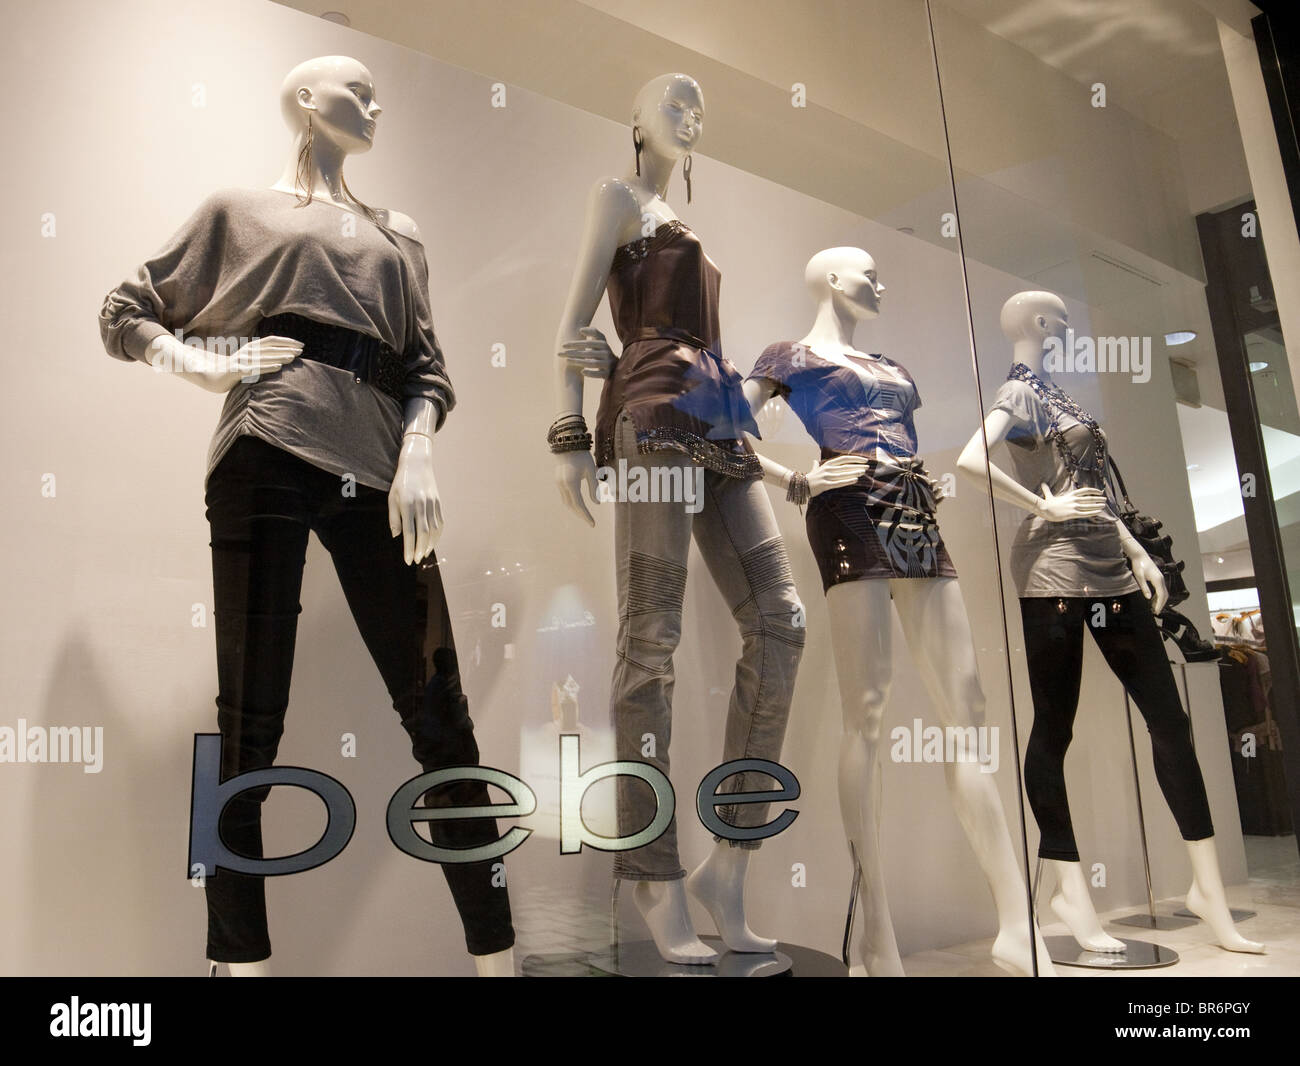 Bebe-Damen-Kleidung und Bekleidung speichern Fenster, Las Vegas USA  Stockfotografie - Alamy